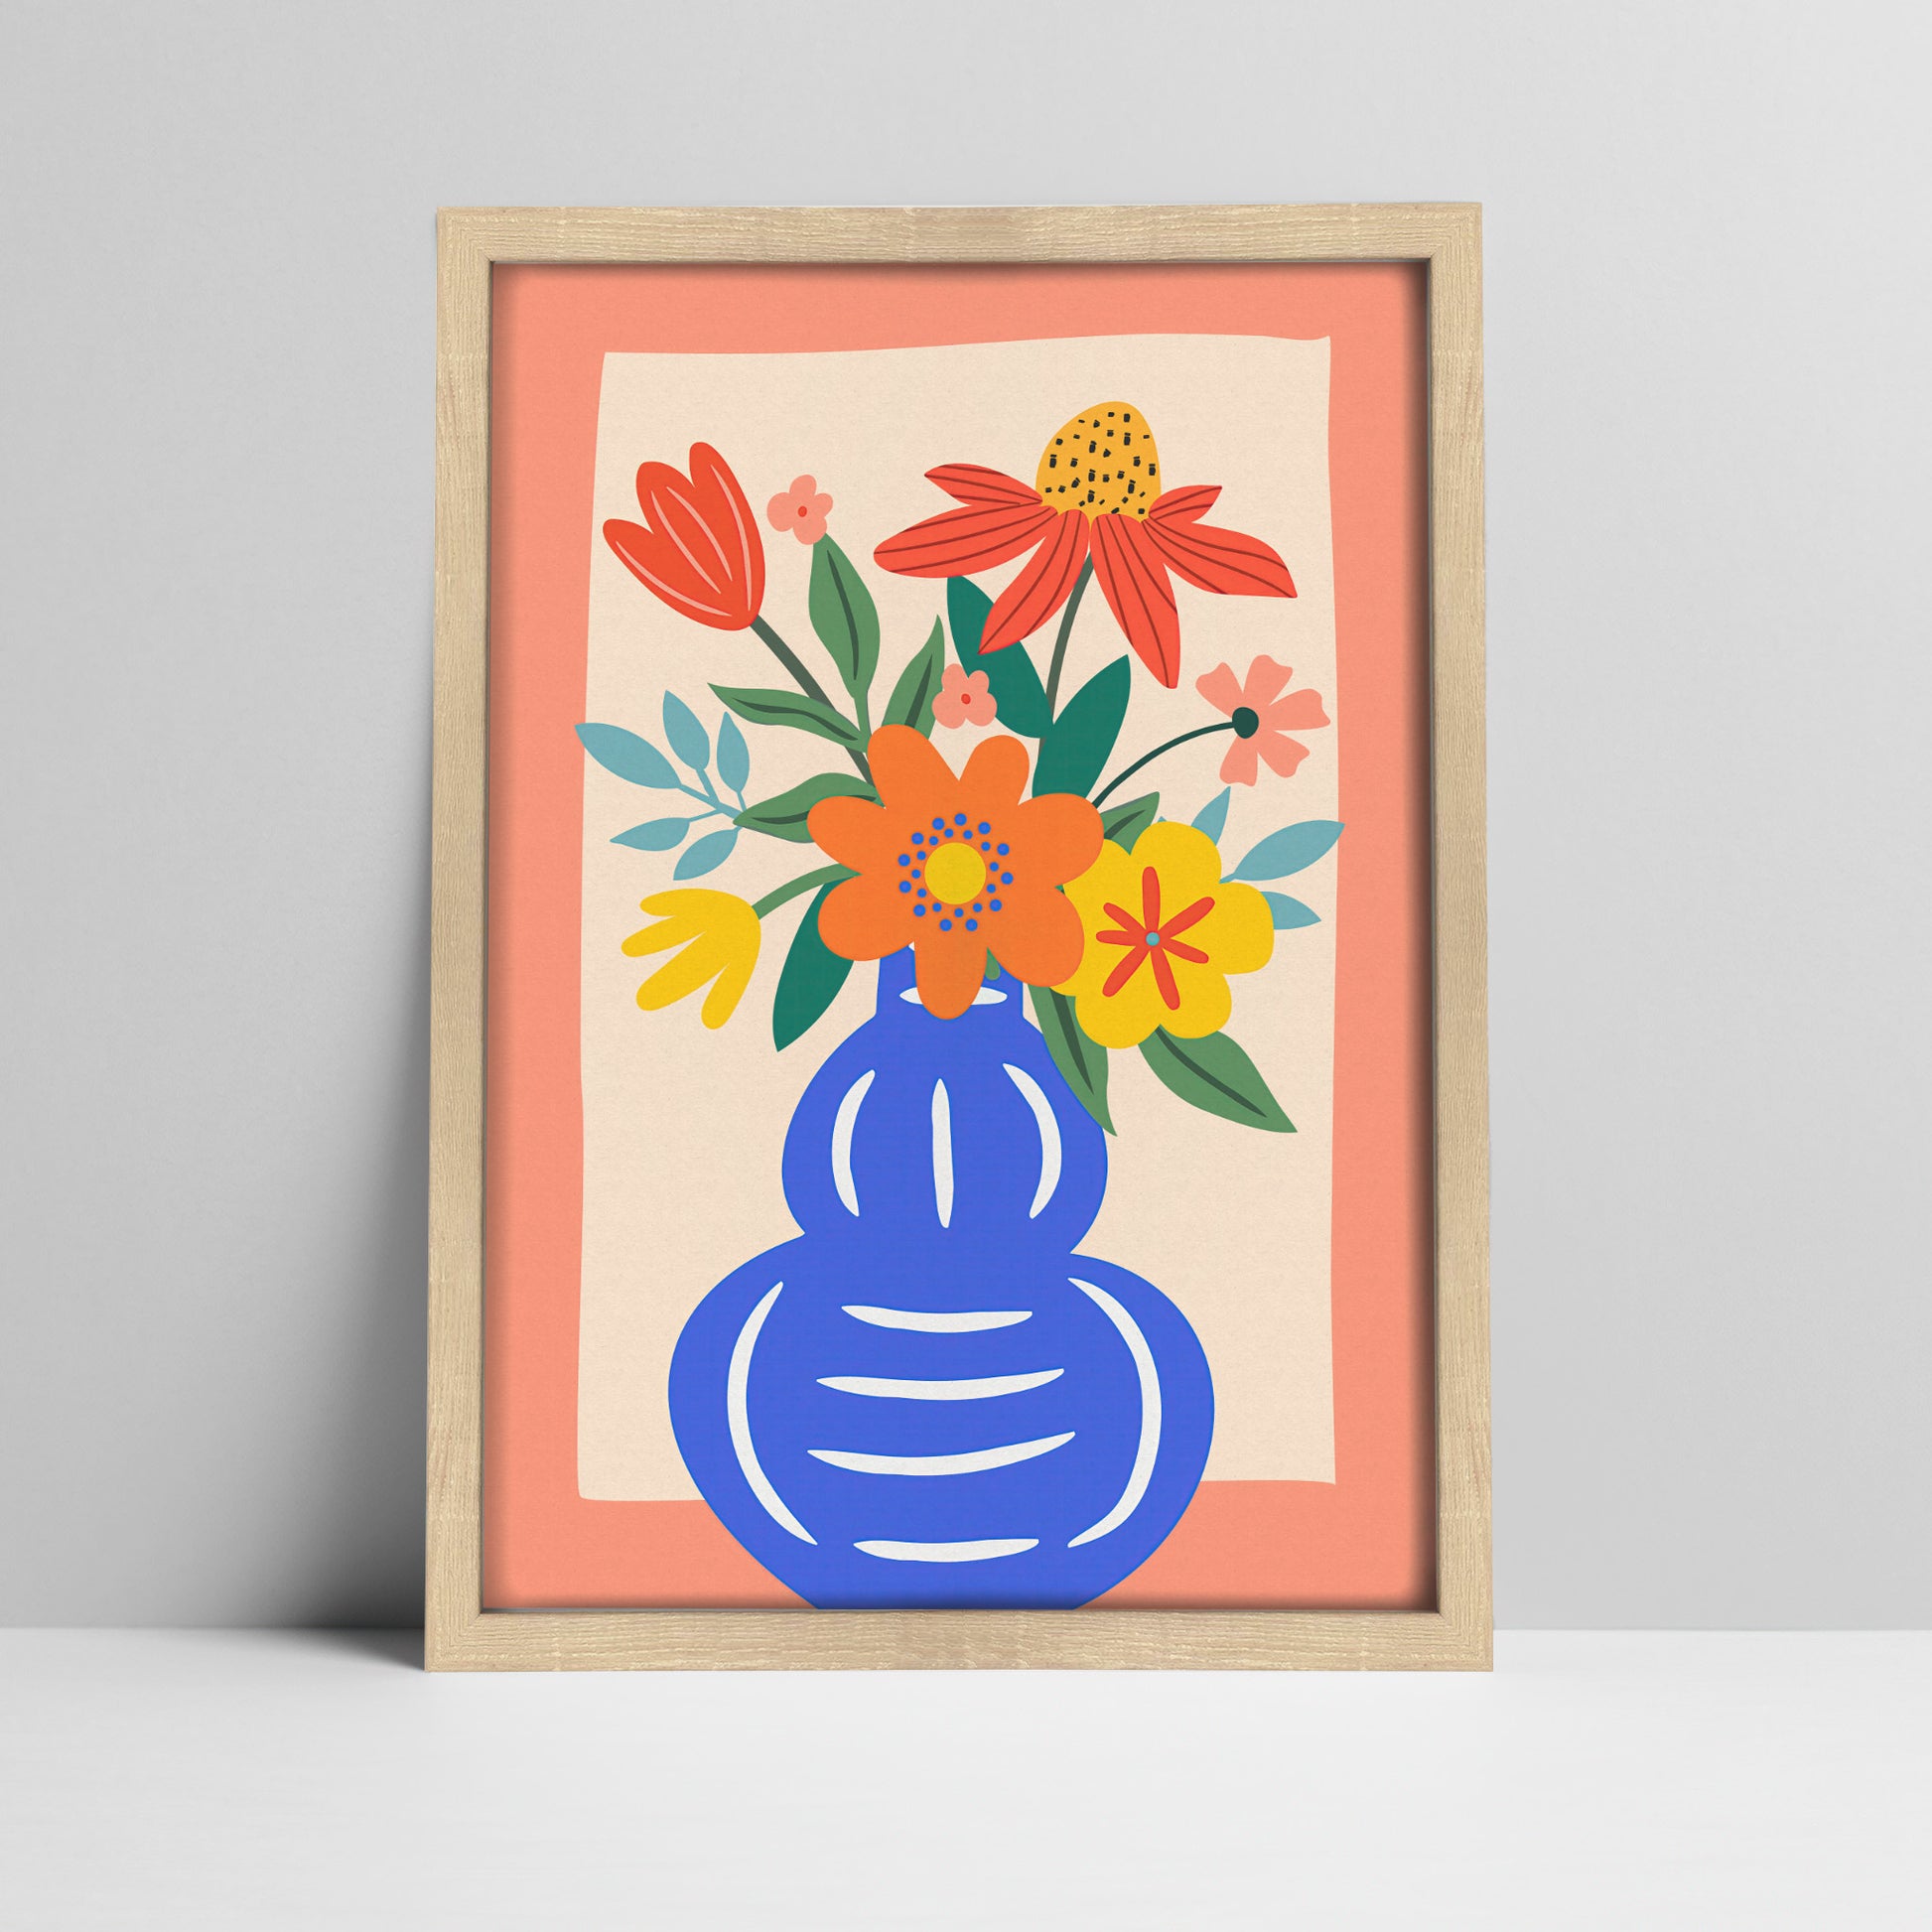 Floral bouquet in blue vase illustration in a 20 mm light wood frame